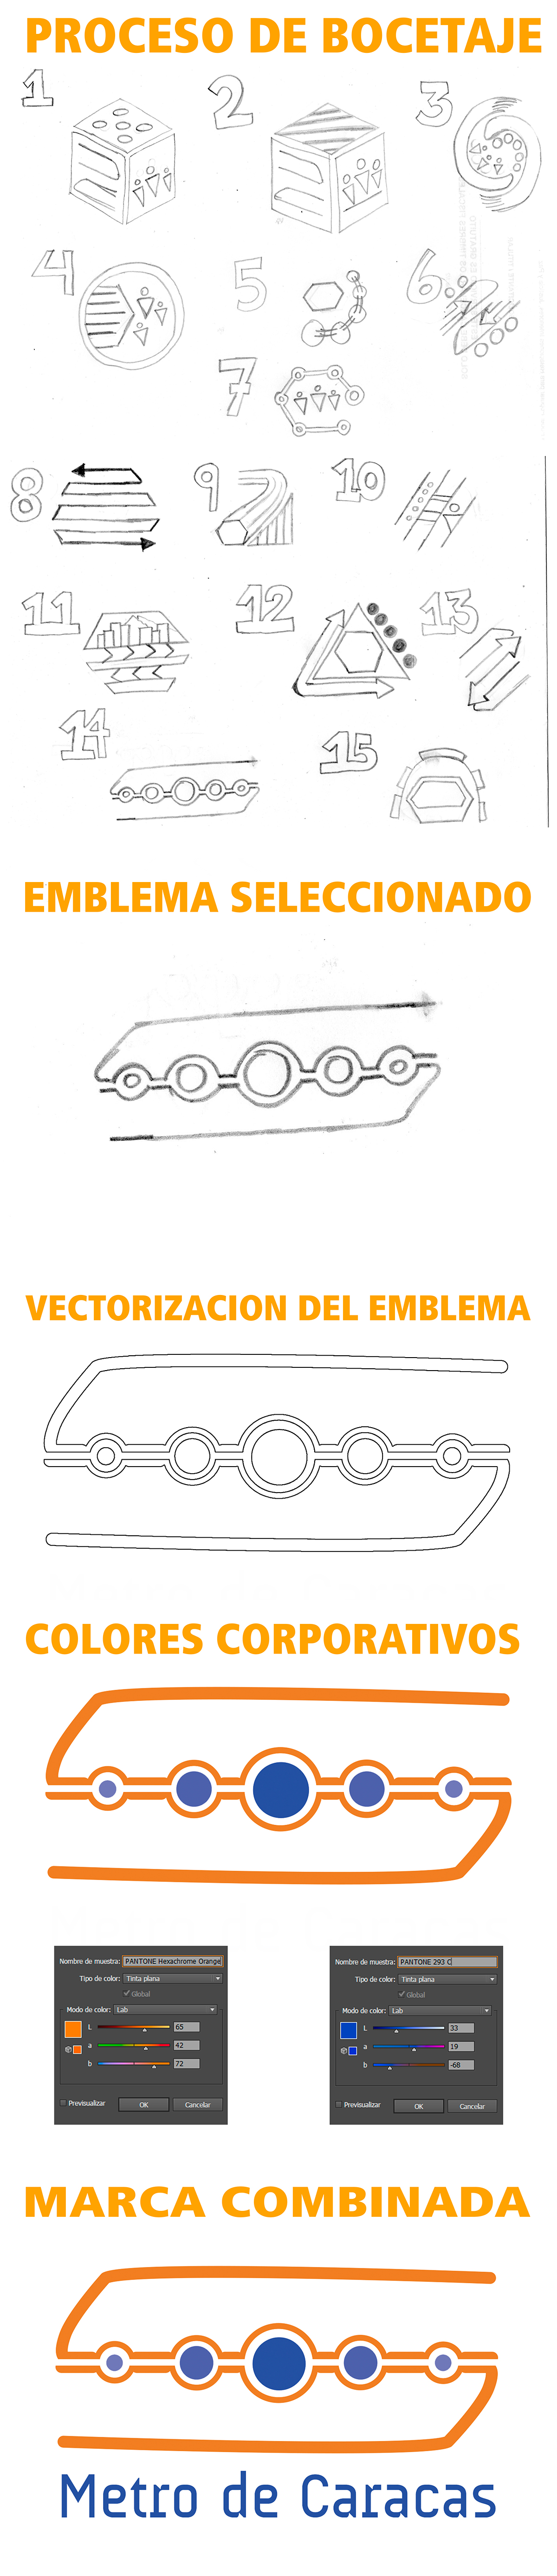 marca combinada emblema logotipo simple minimalismo Metro de Caracas venezuela diseño creativo diseño gráfico